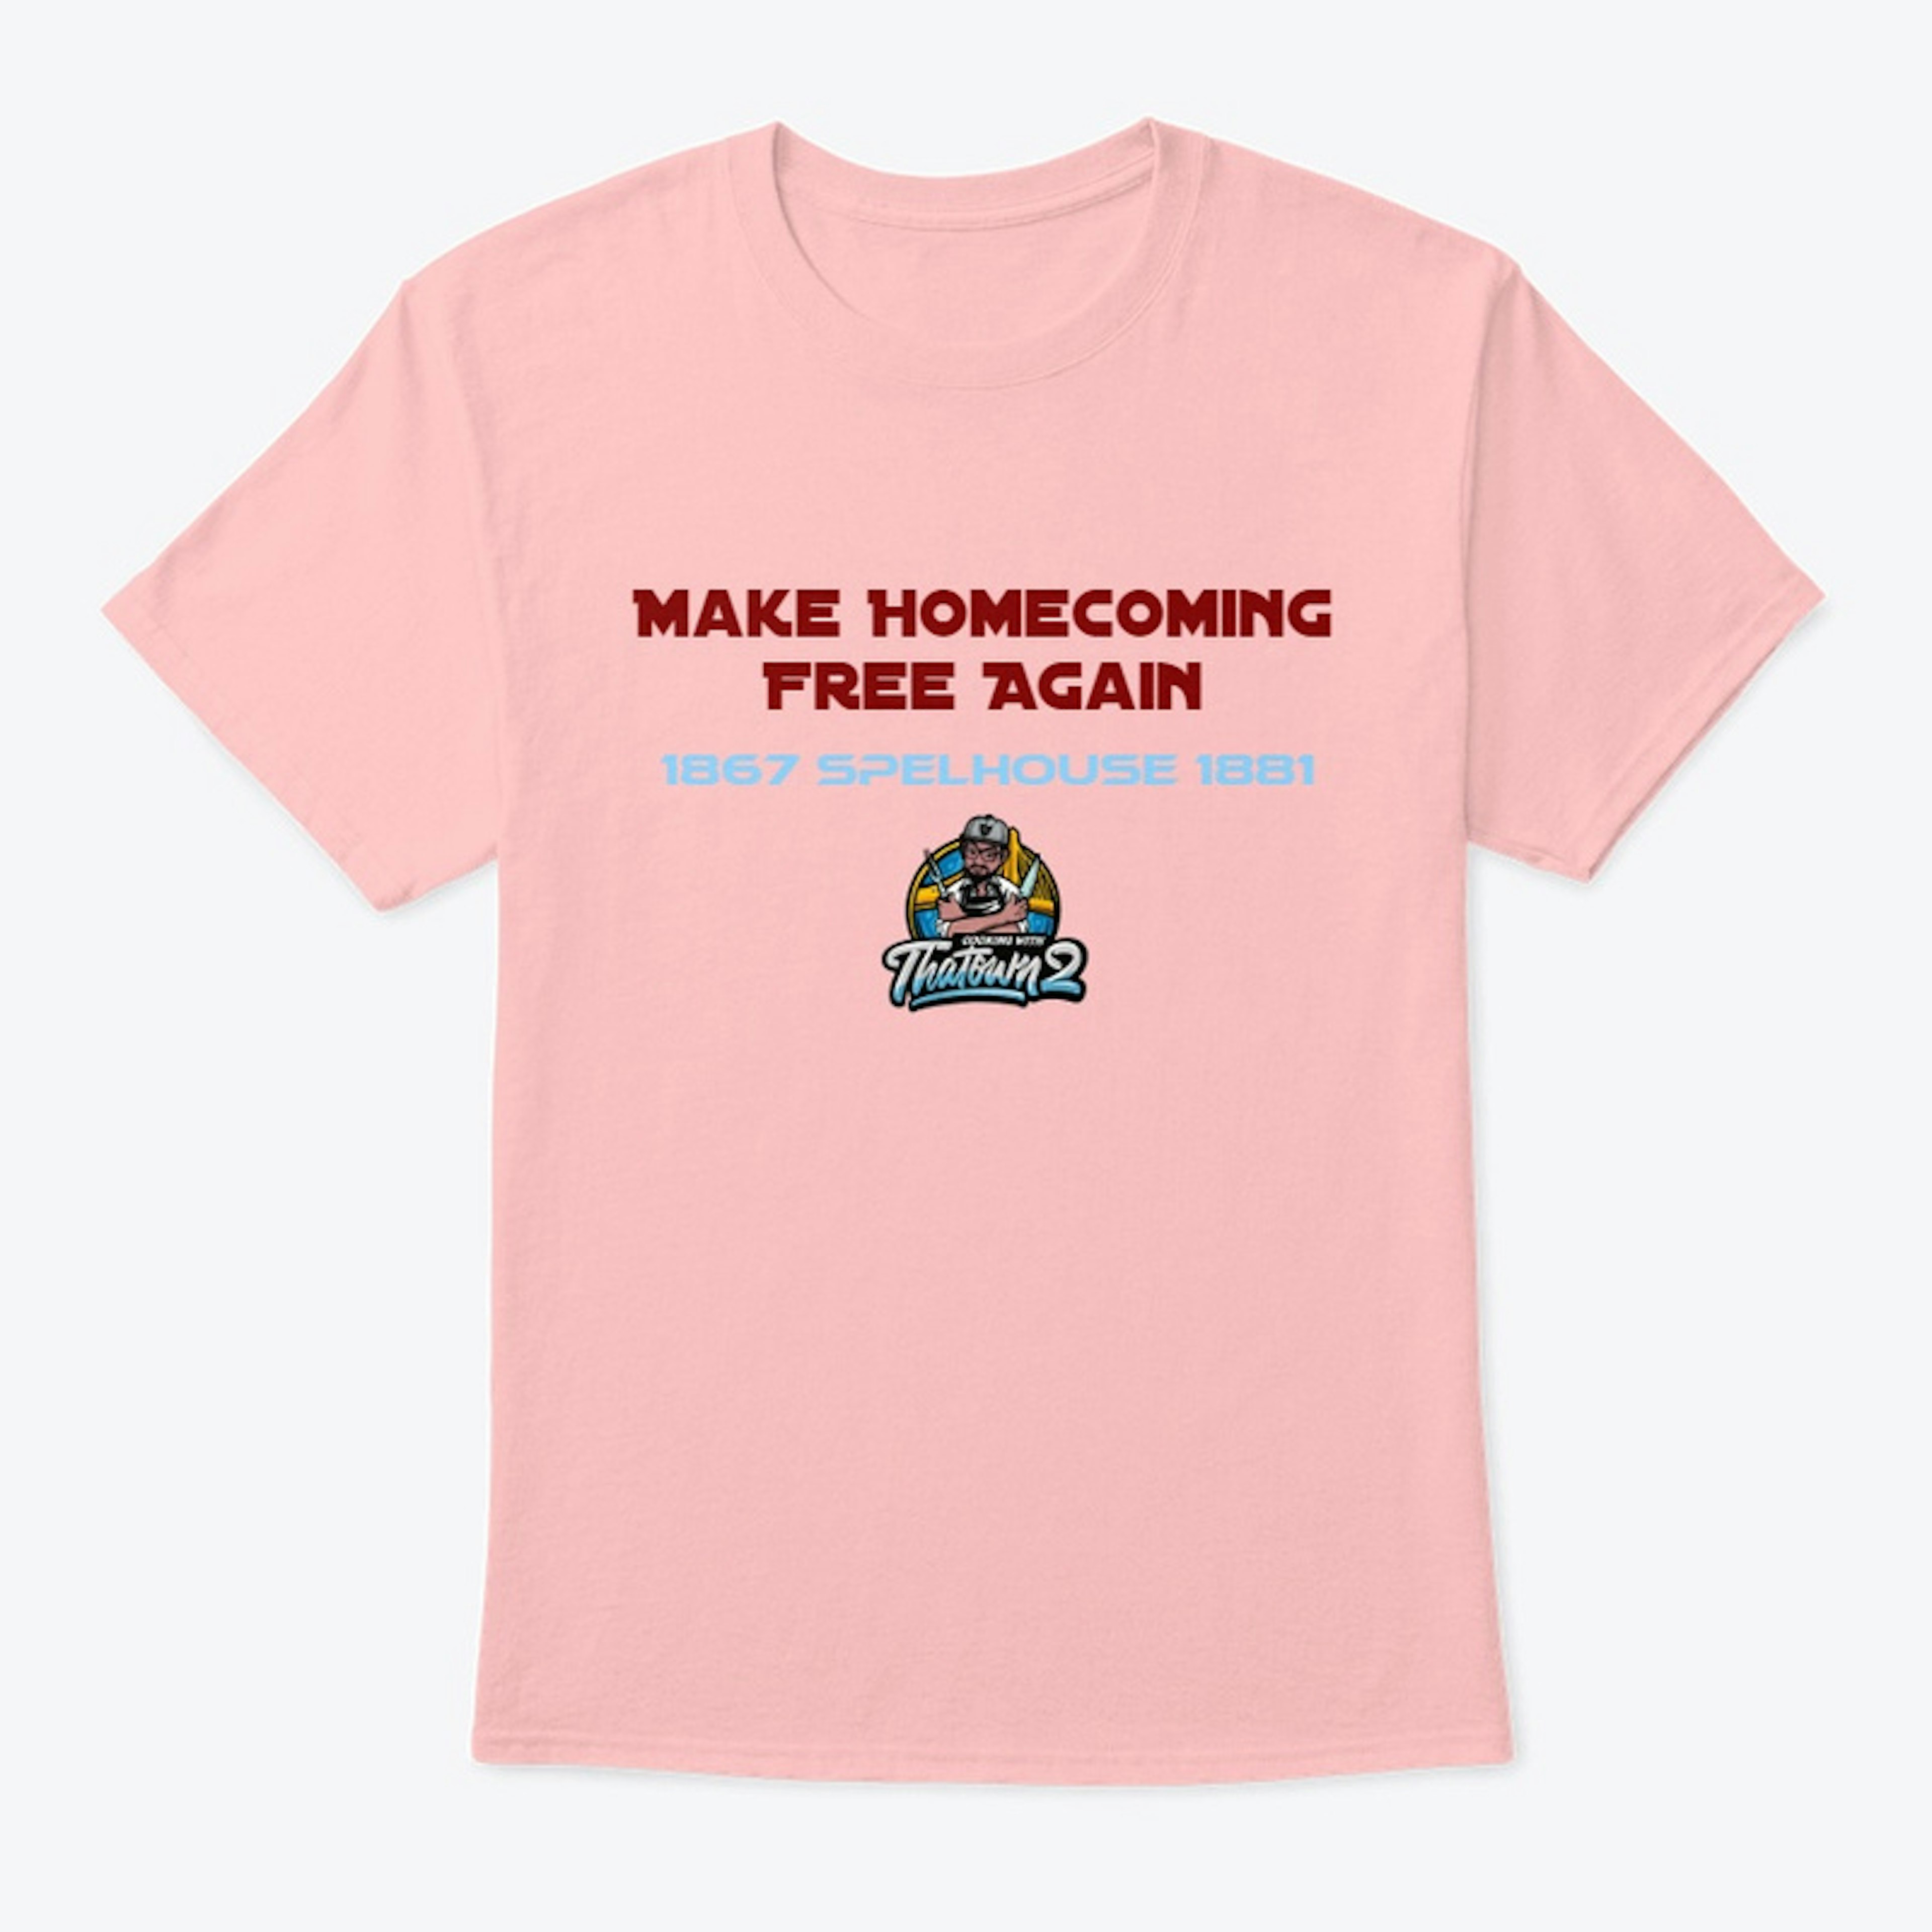 Homecoming shirt